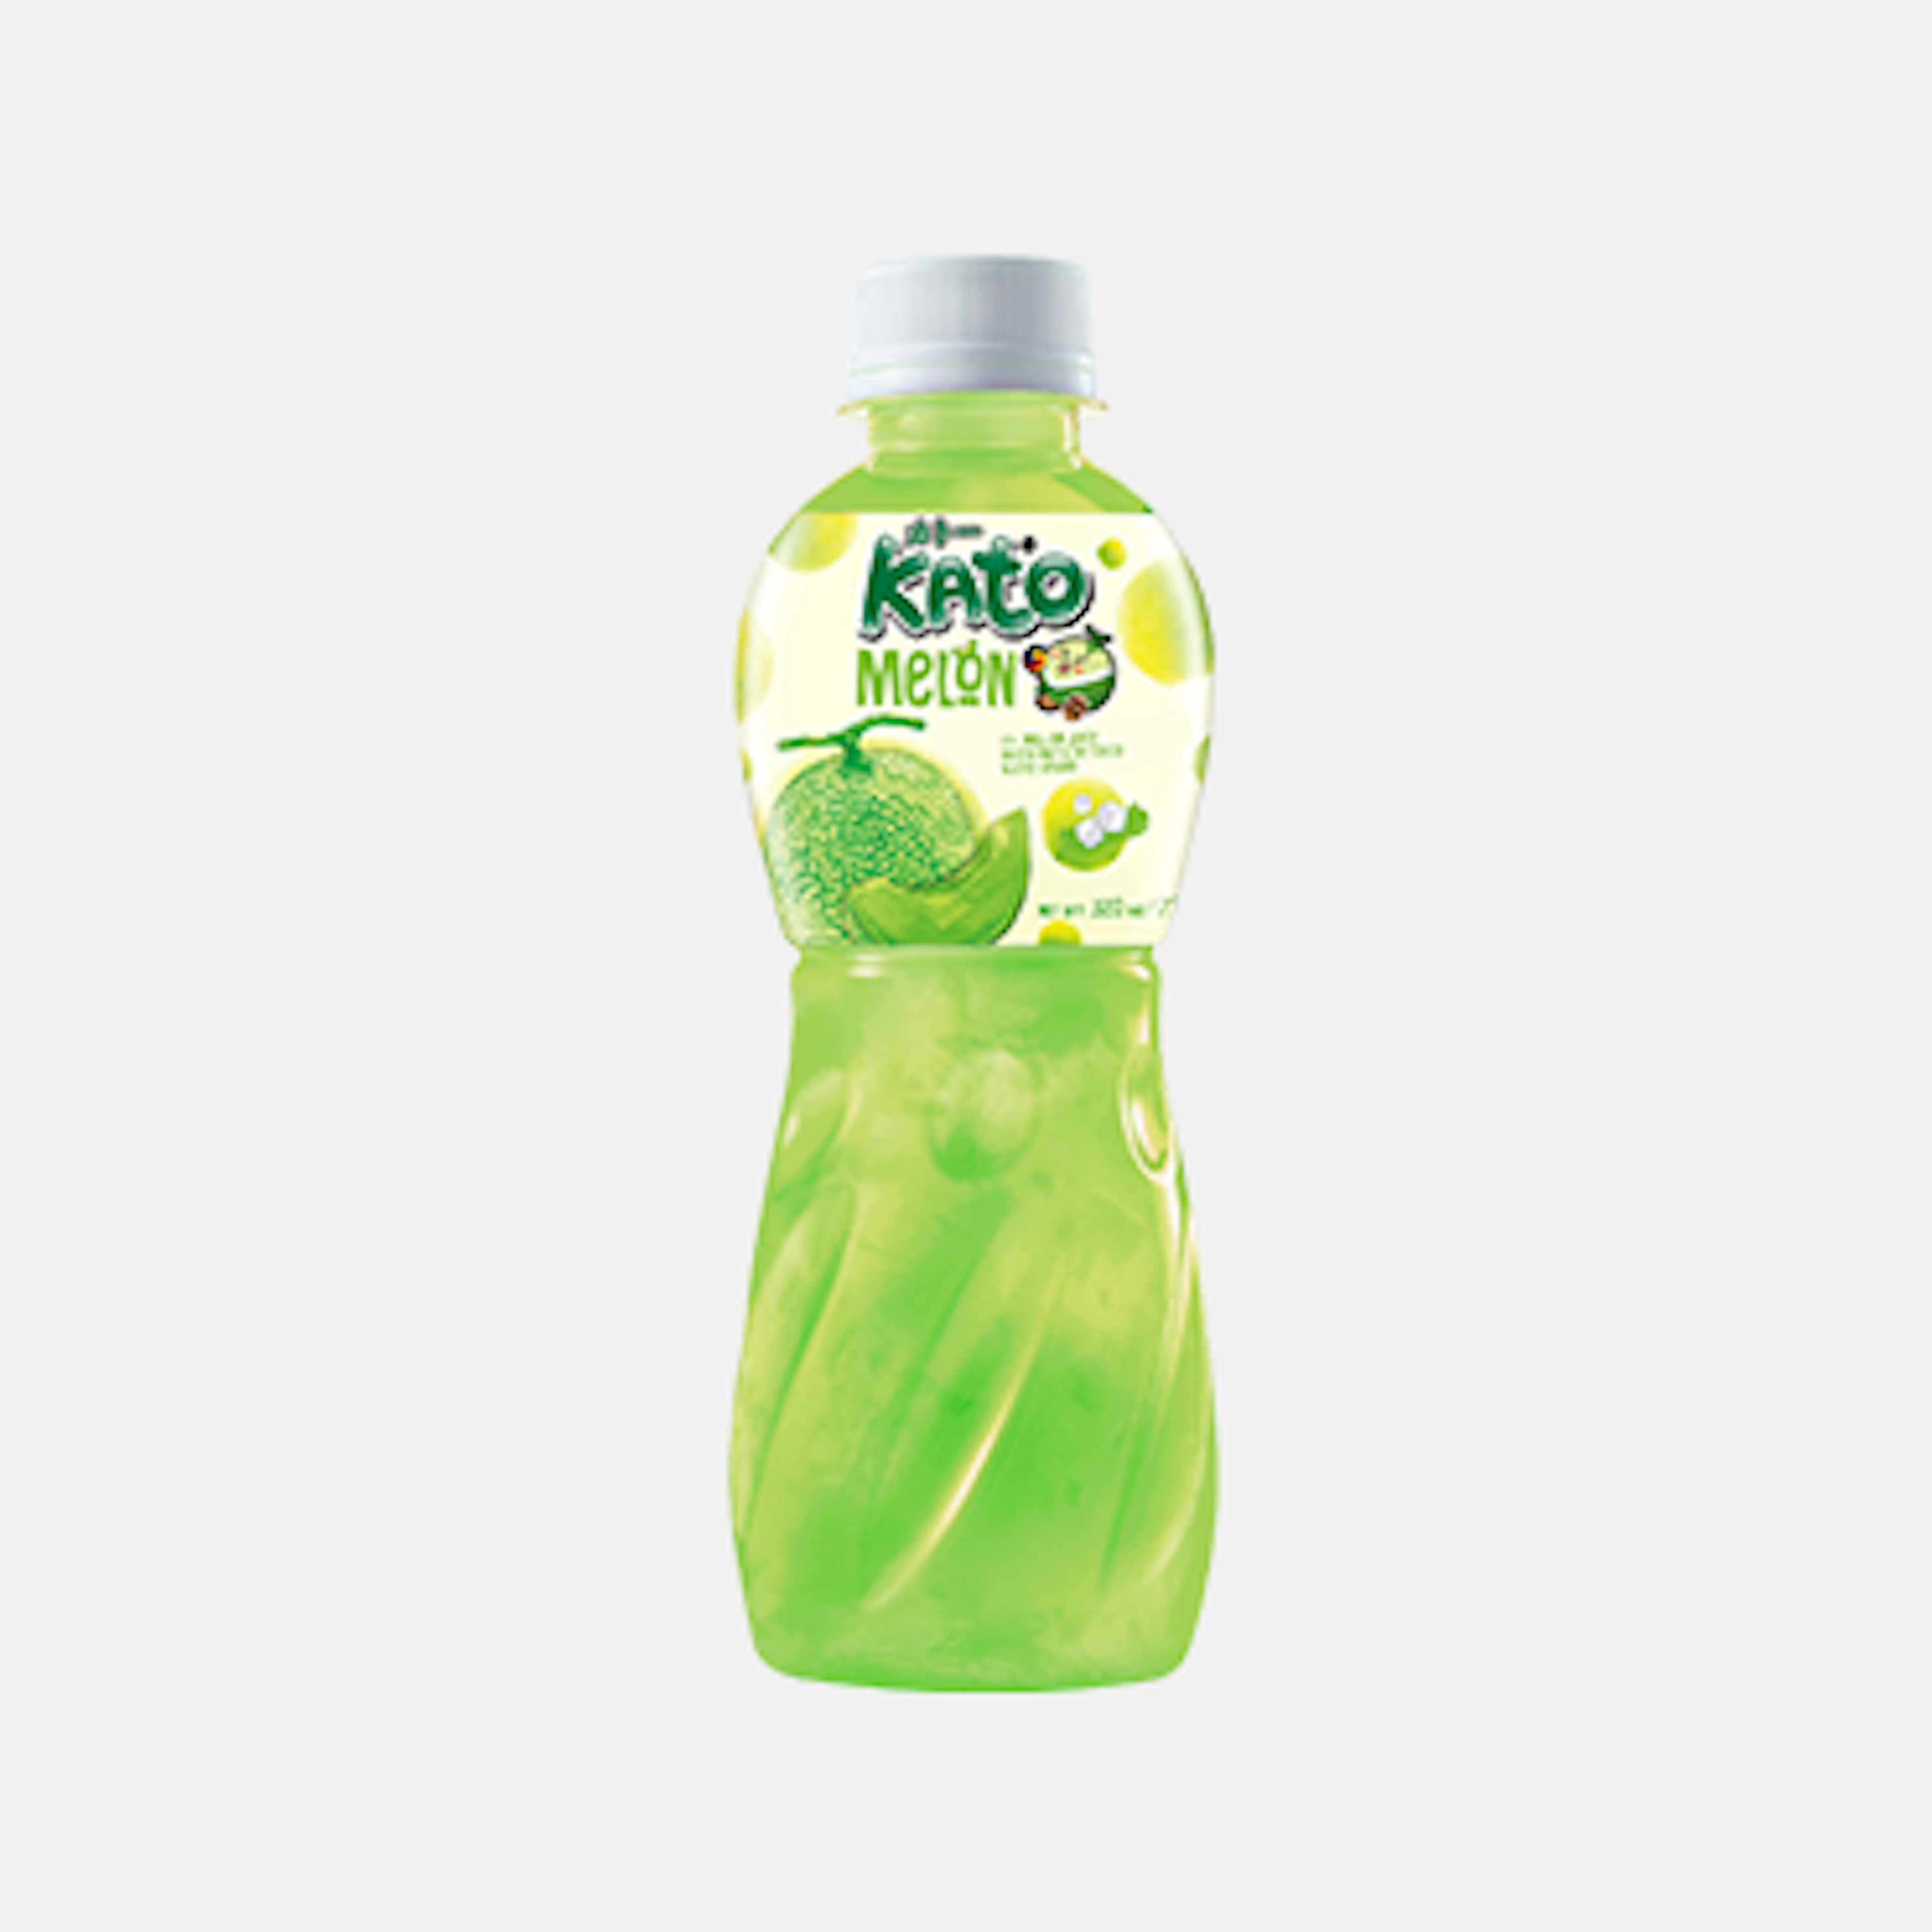 KATO Melonensaft mit Nata De Coco 320ml - Erfrischendes Getränk mit tropischem Geschmack